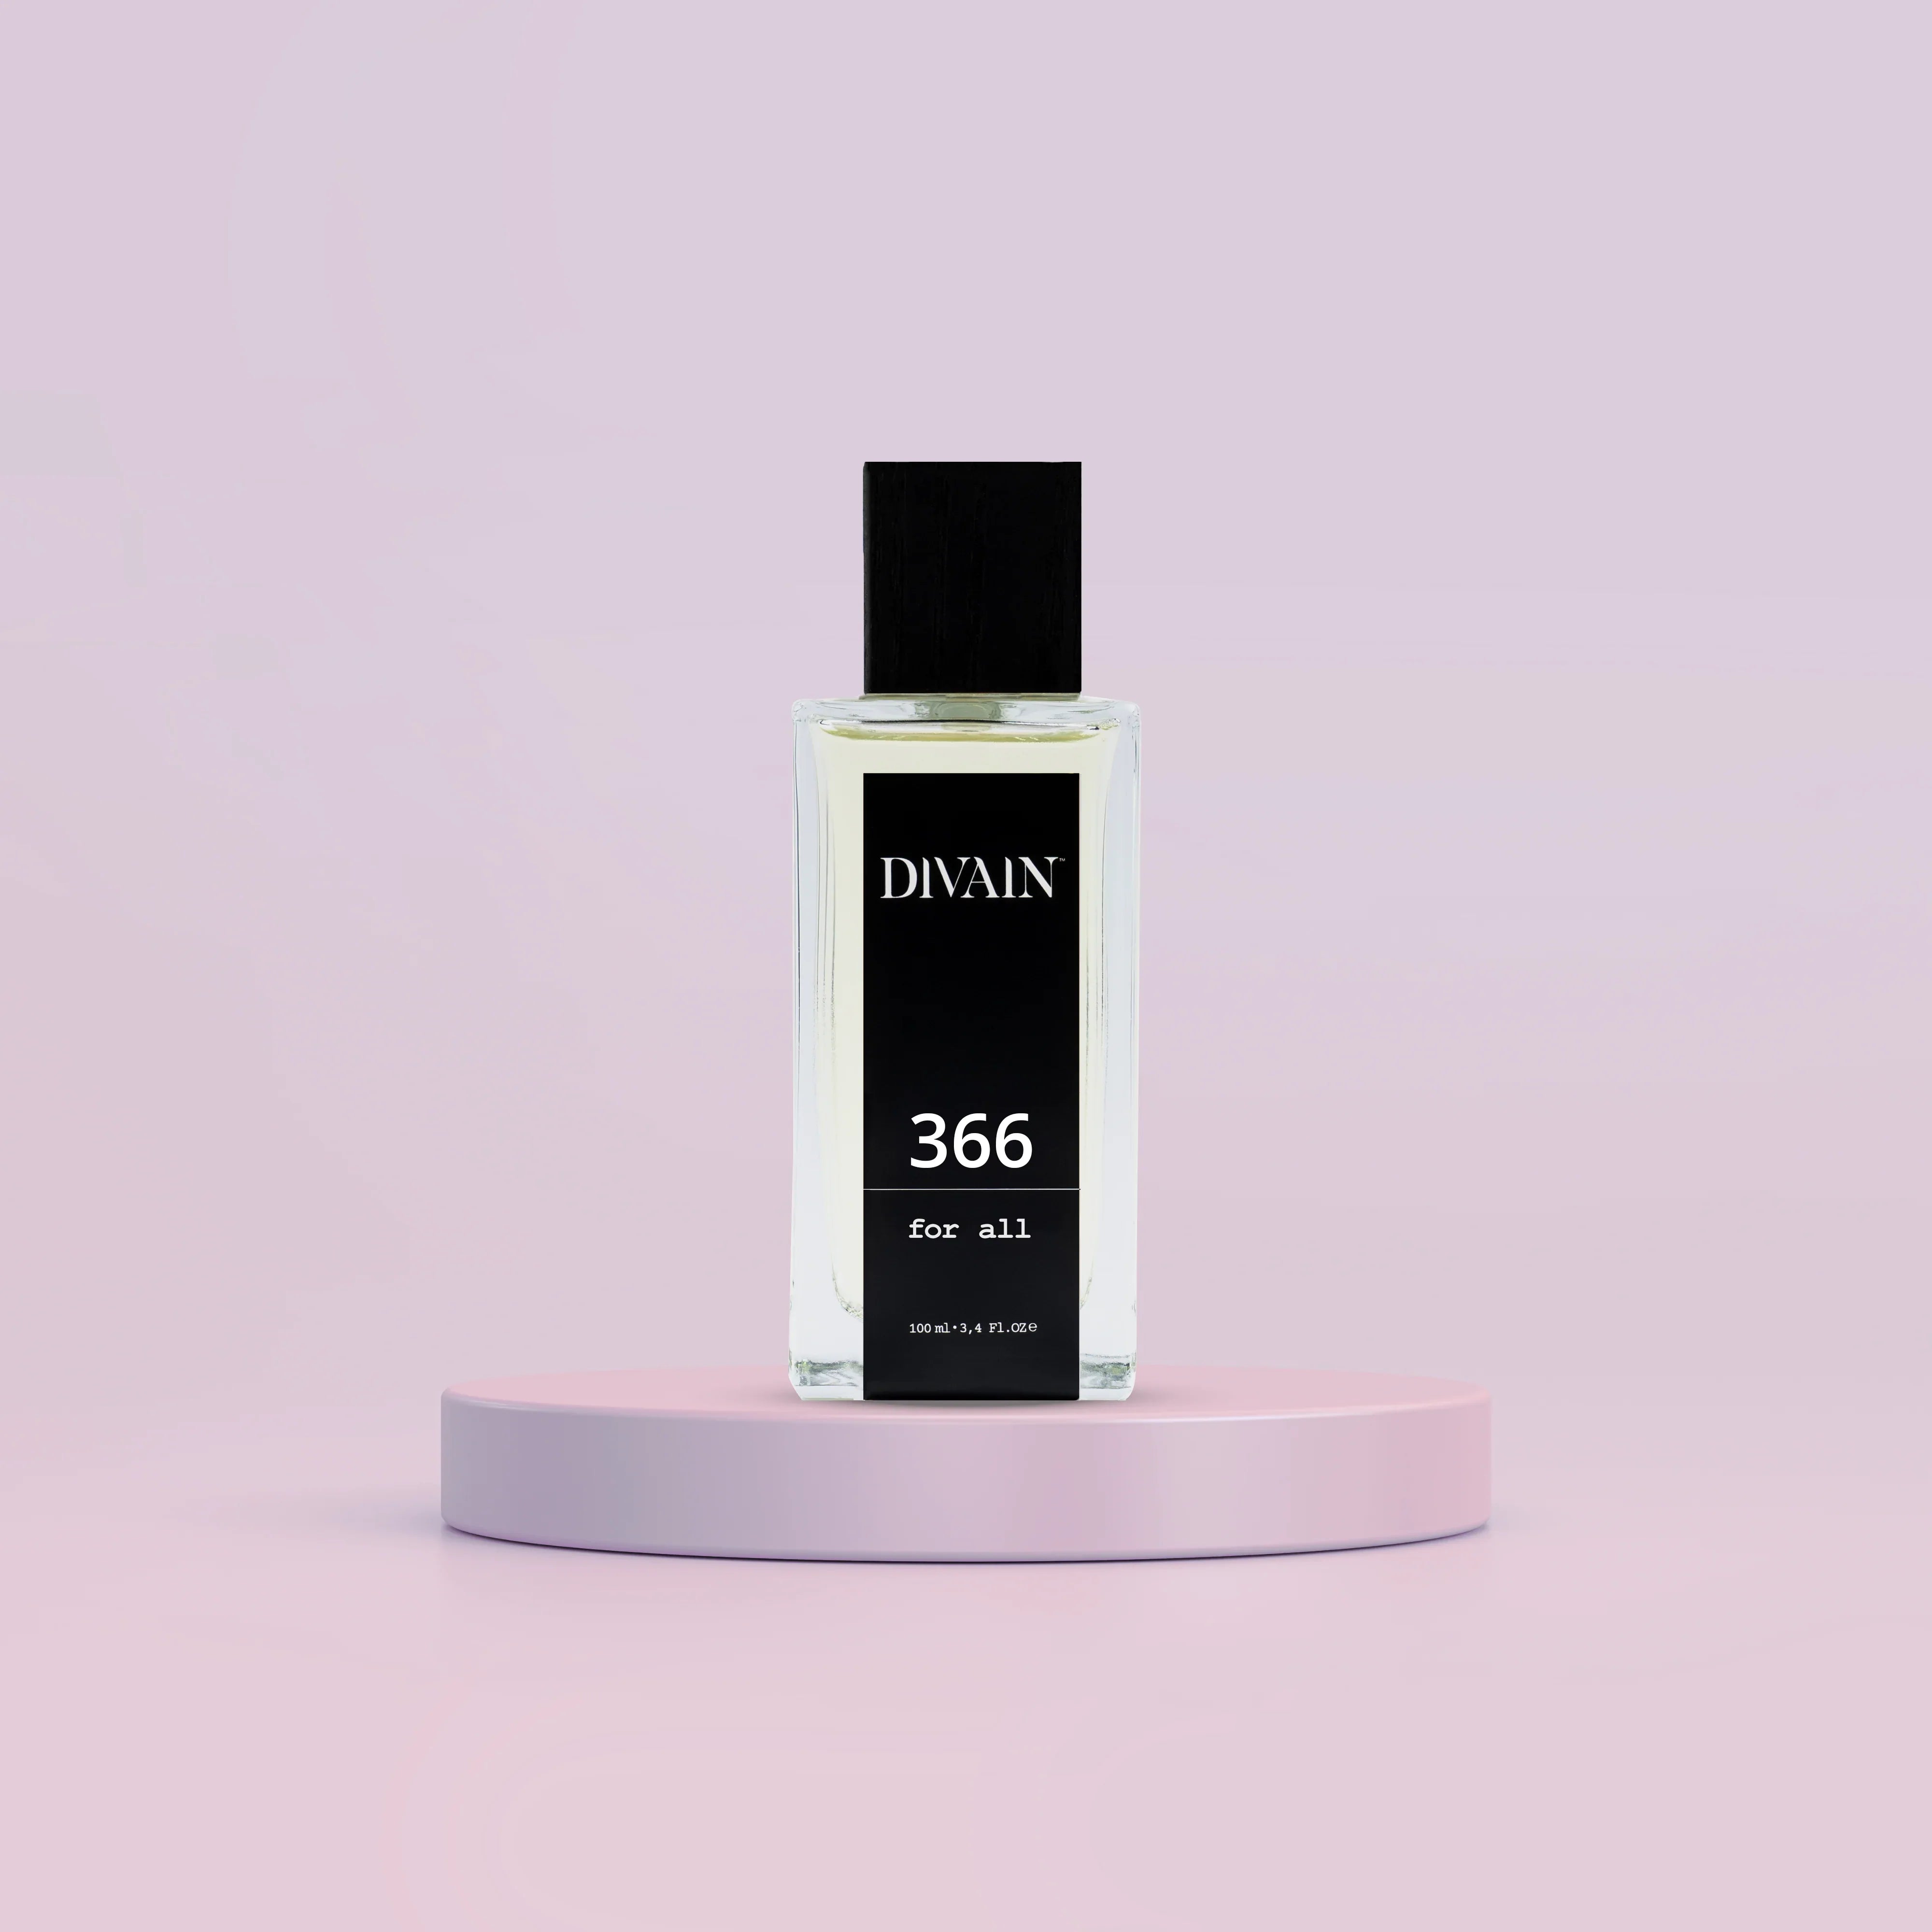 DIVAIN-366 | Similar a Tobacolor de Dior | Unisex